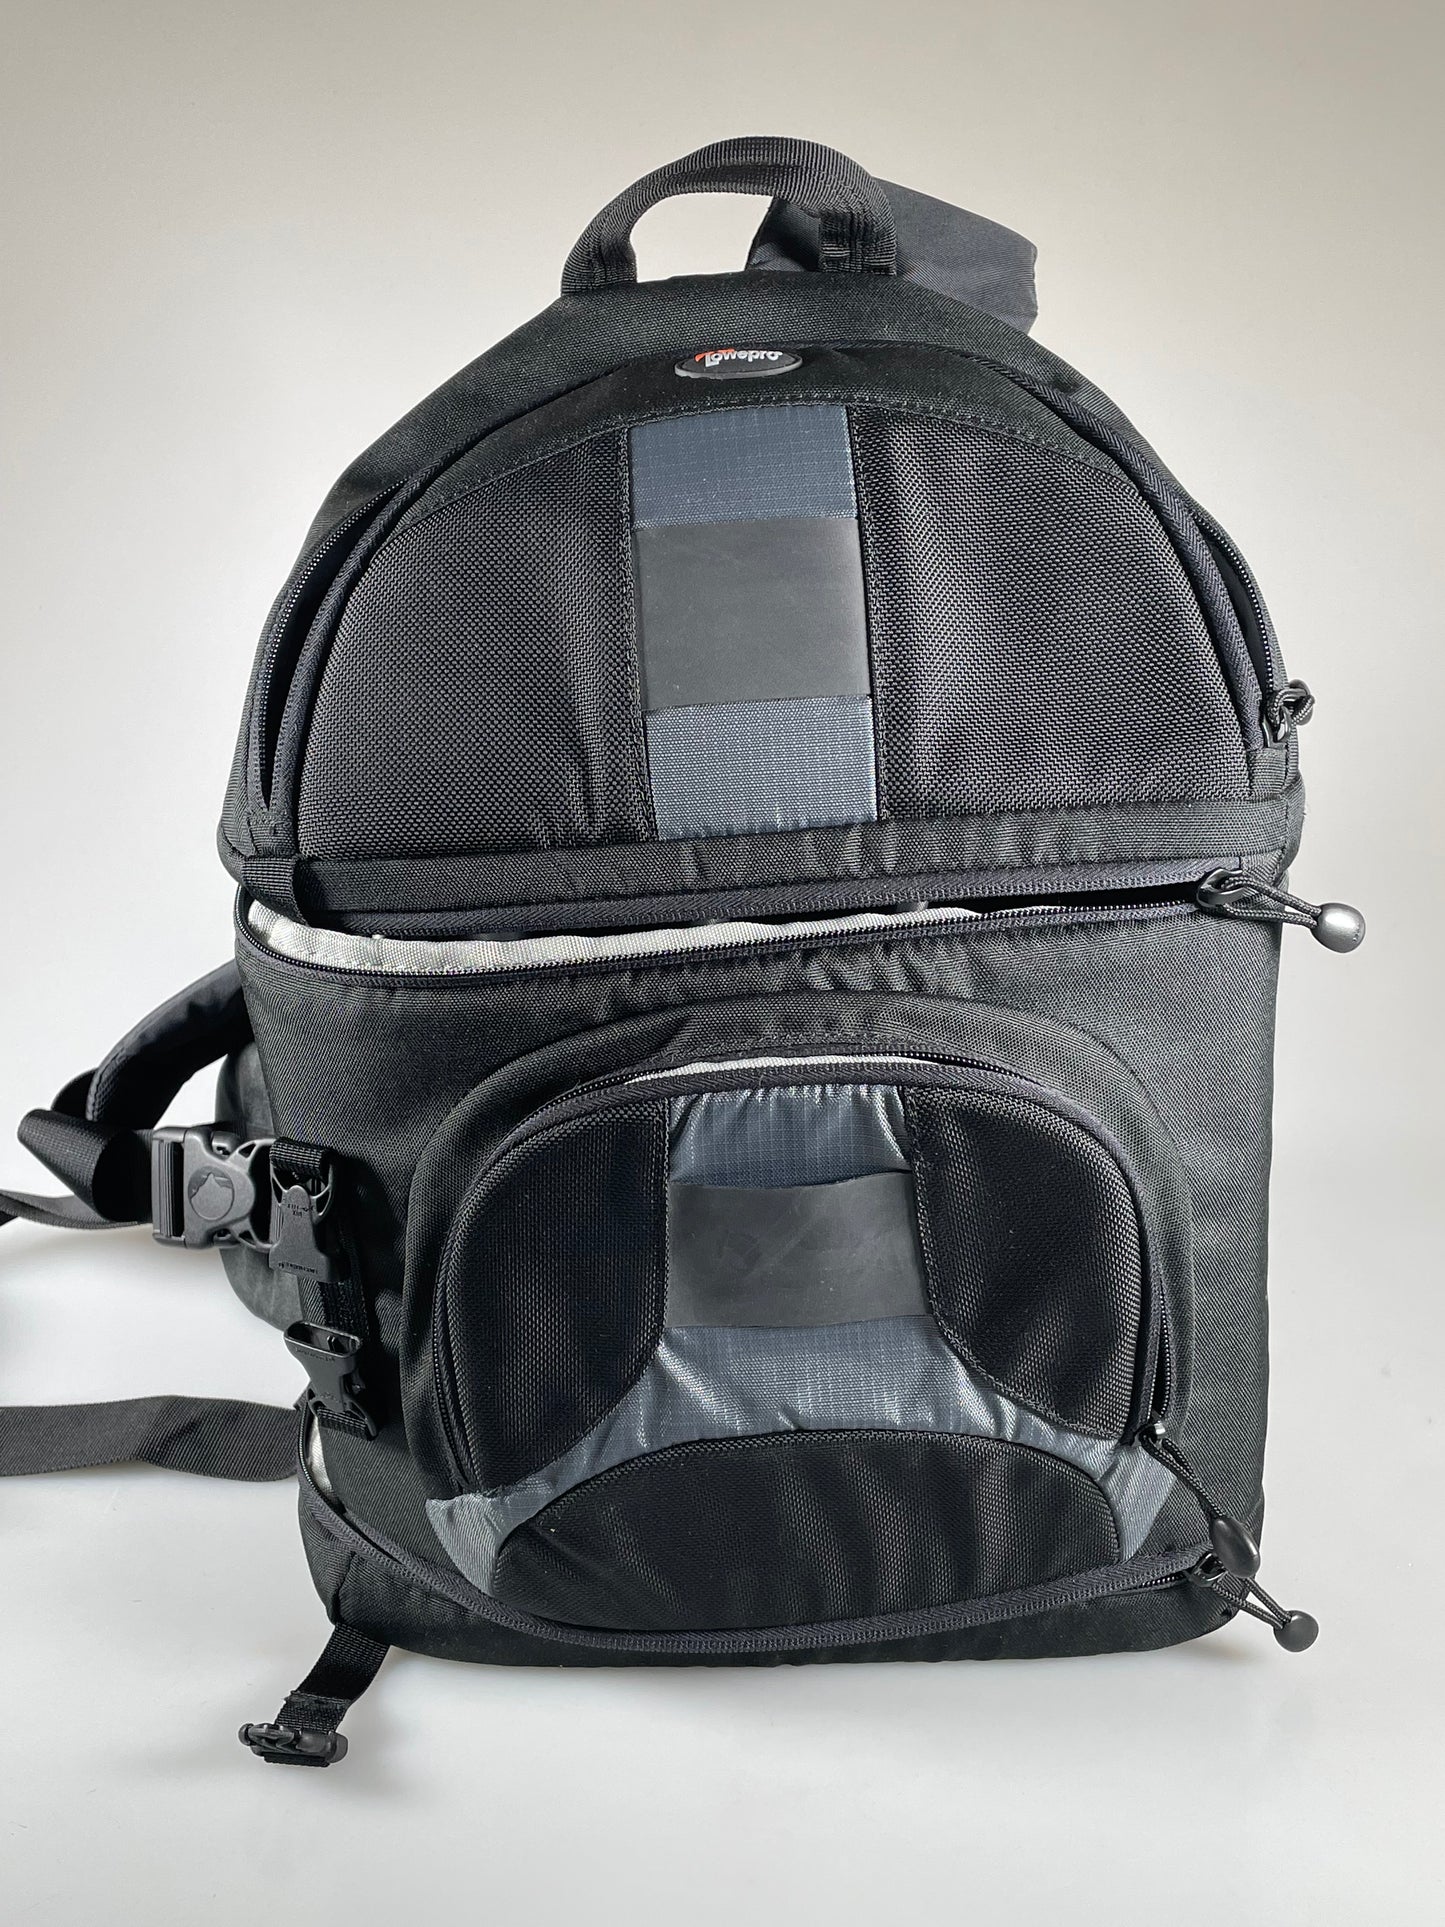 Lowepro Slingshot 300 AW - All Weather DSLR Sling Black Camera Bag